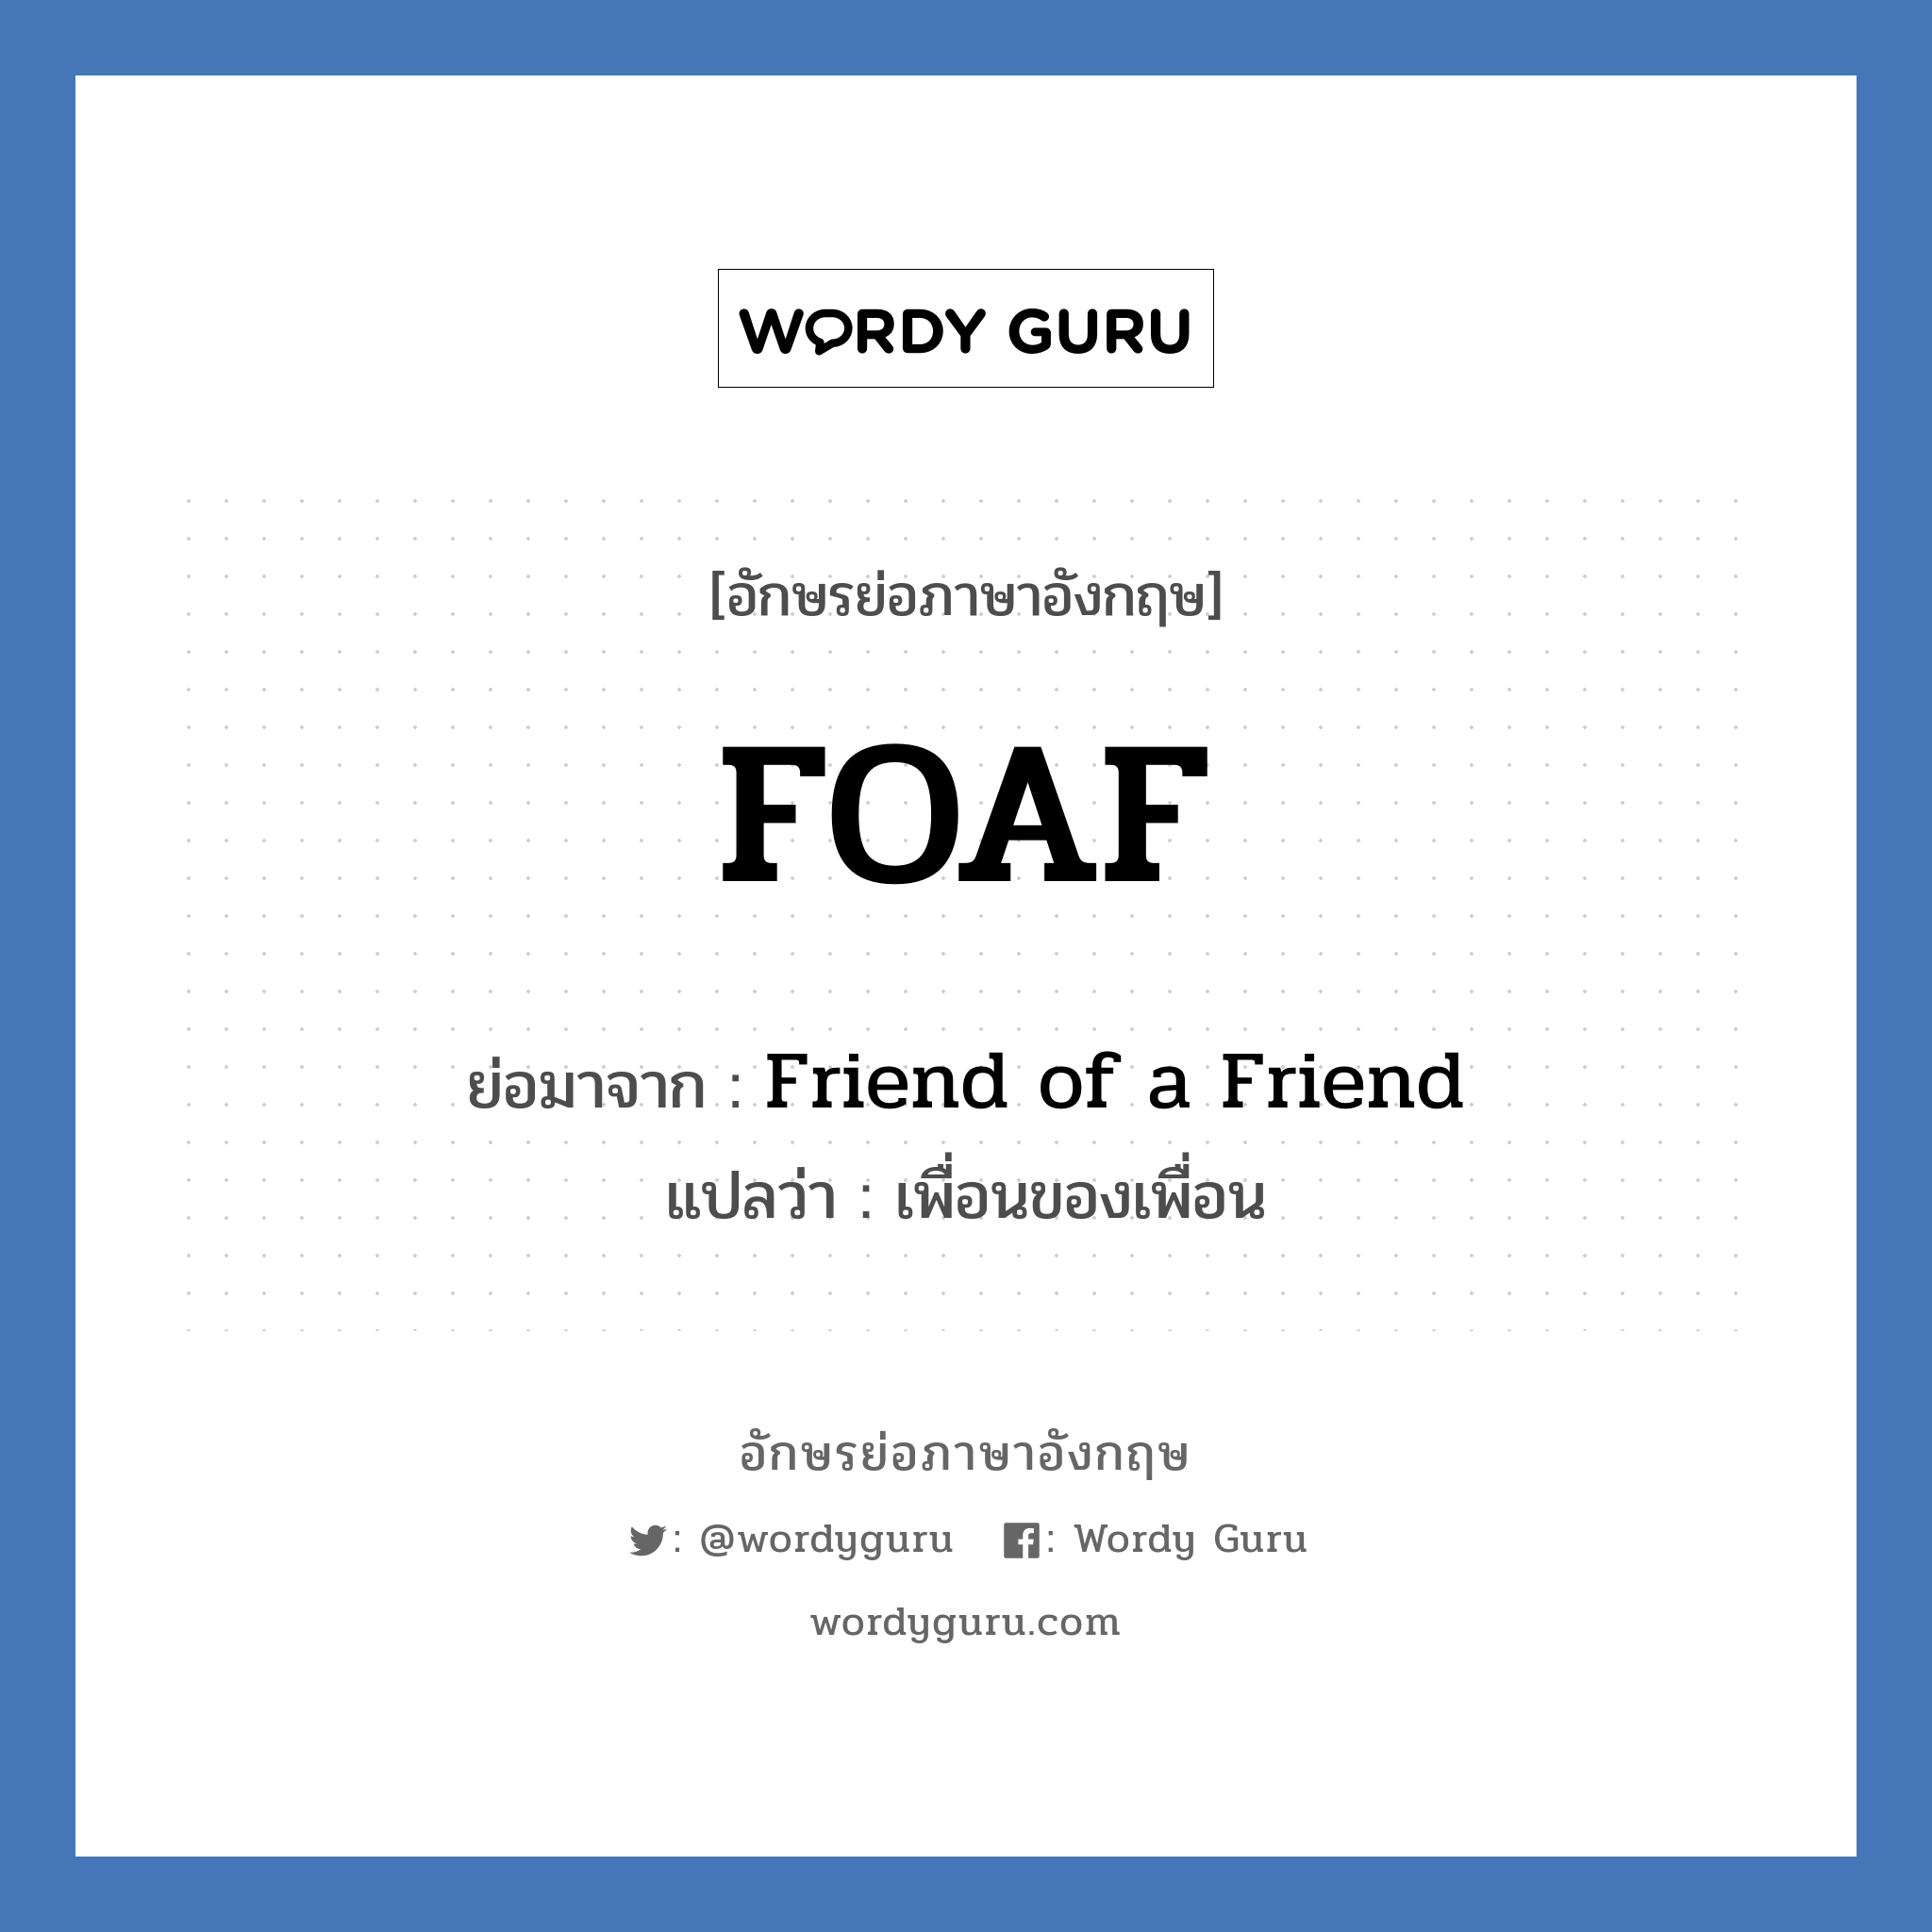 FOAF ย่อมาจาก? แปลว่า?, อักษรย่อภาษาอังกฤษ FOAF ย่อมาจาก Friend of a Friend แปลว่า เพื่อนของเพื่อน